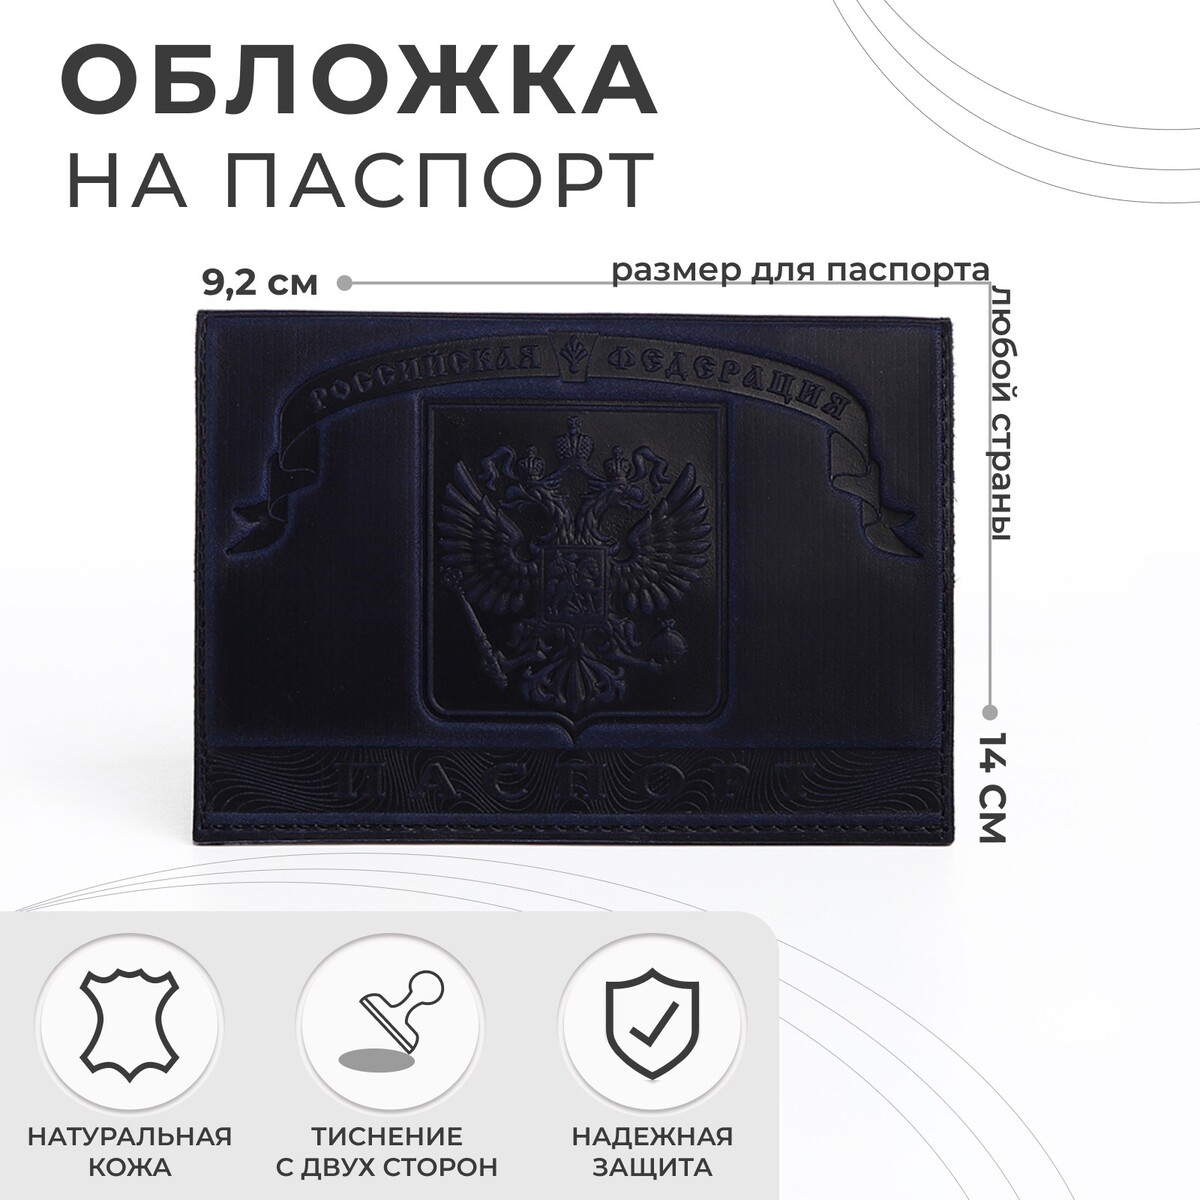 Обложка для паспорта, герб, цвет темно-синий